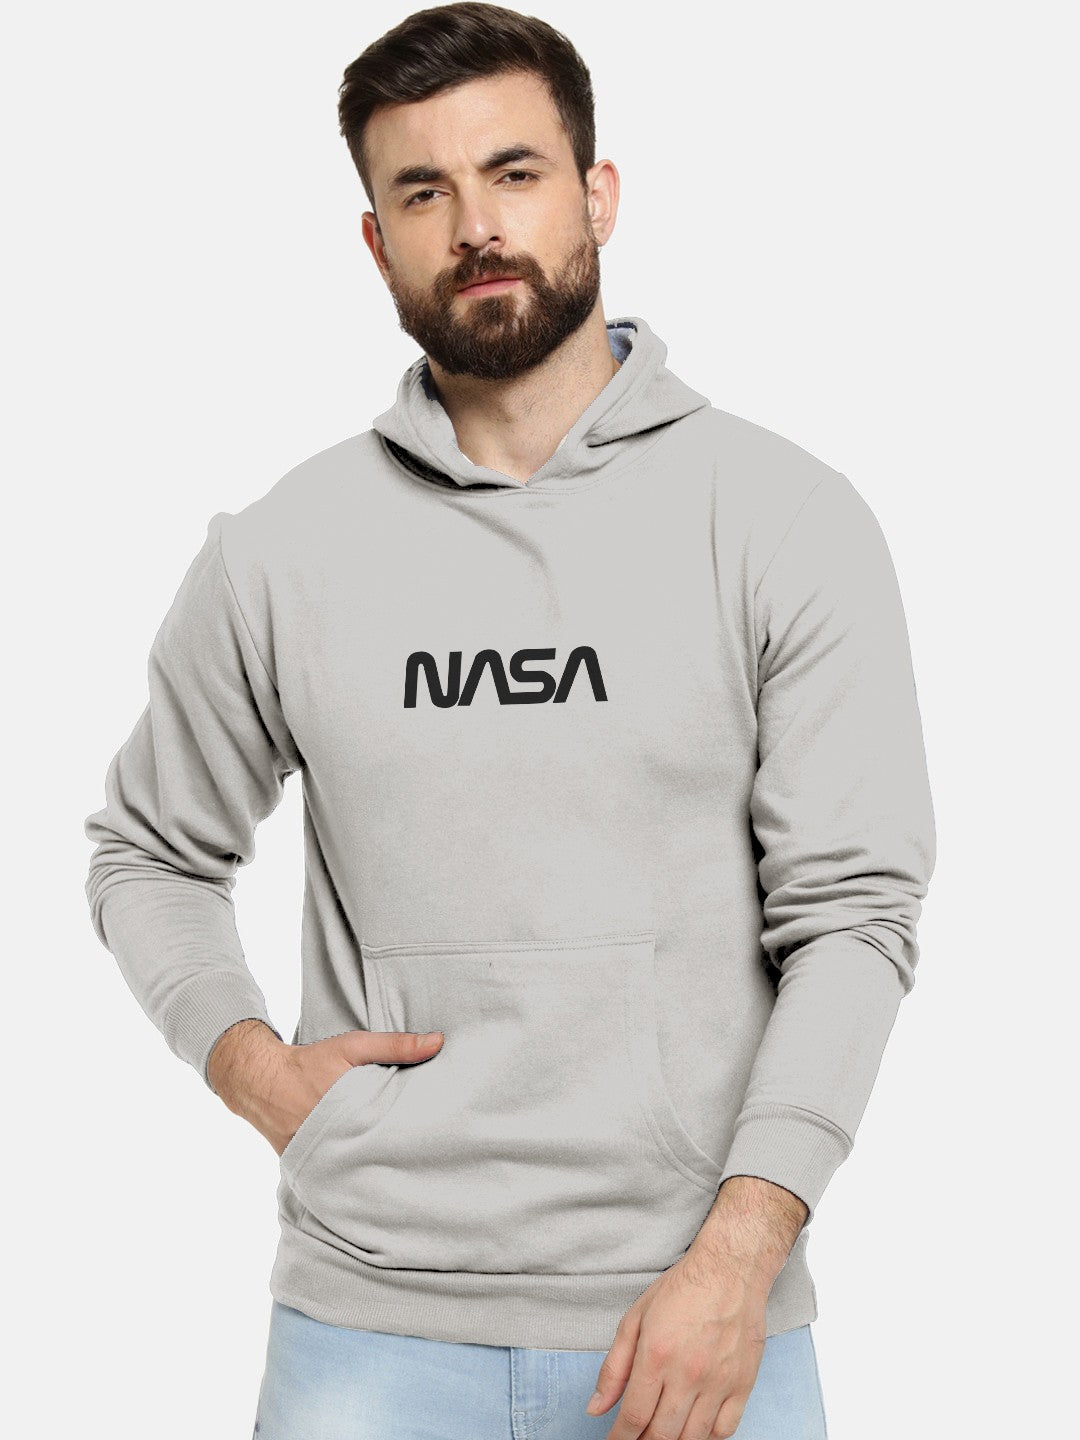 Nasa Printed Premium Hoodie For Men and Women's